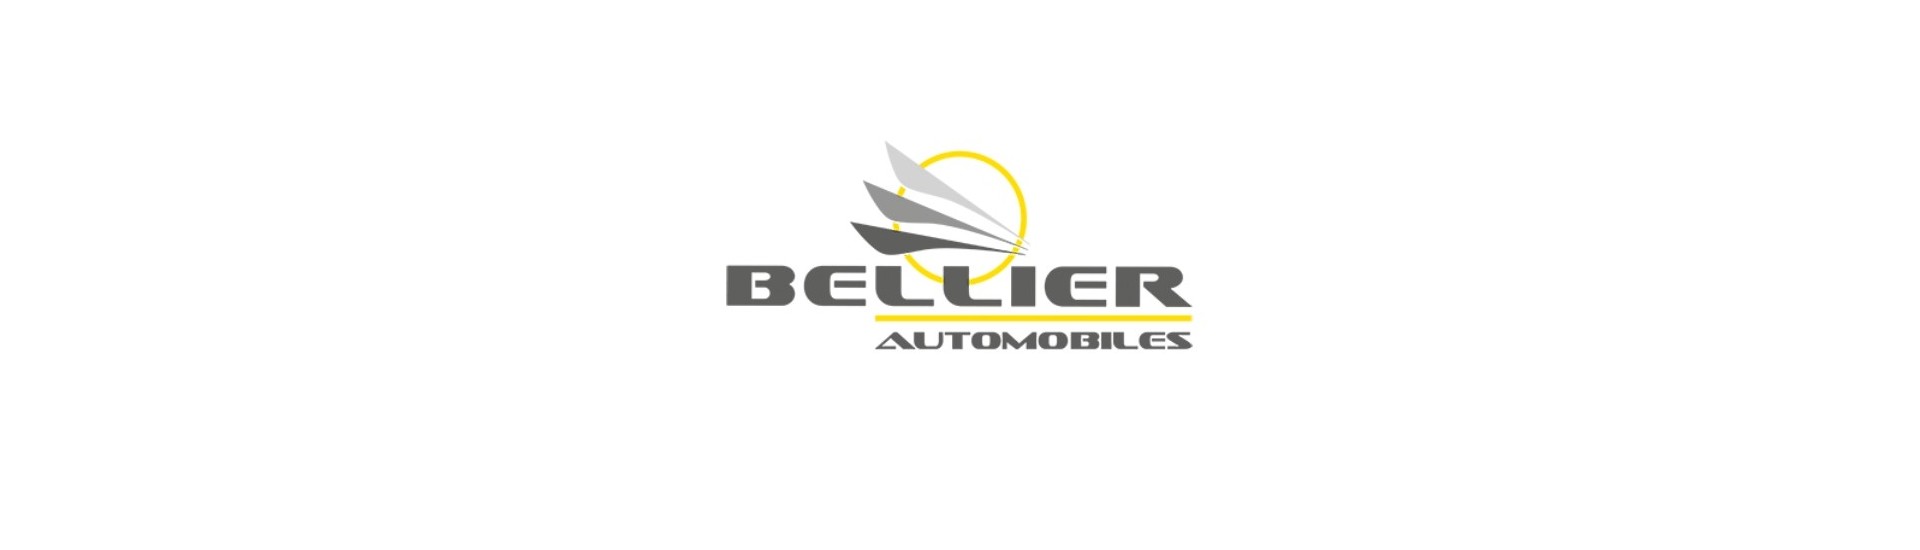 Flexible Bremse zum besten Preis für Auto ohne Lizenz Bellier